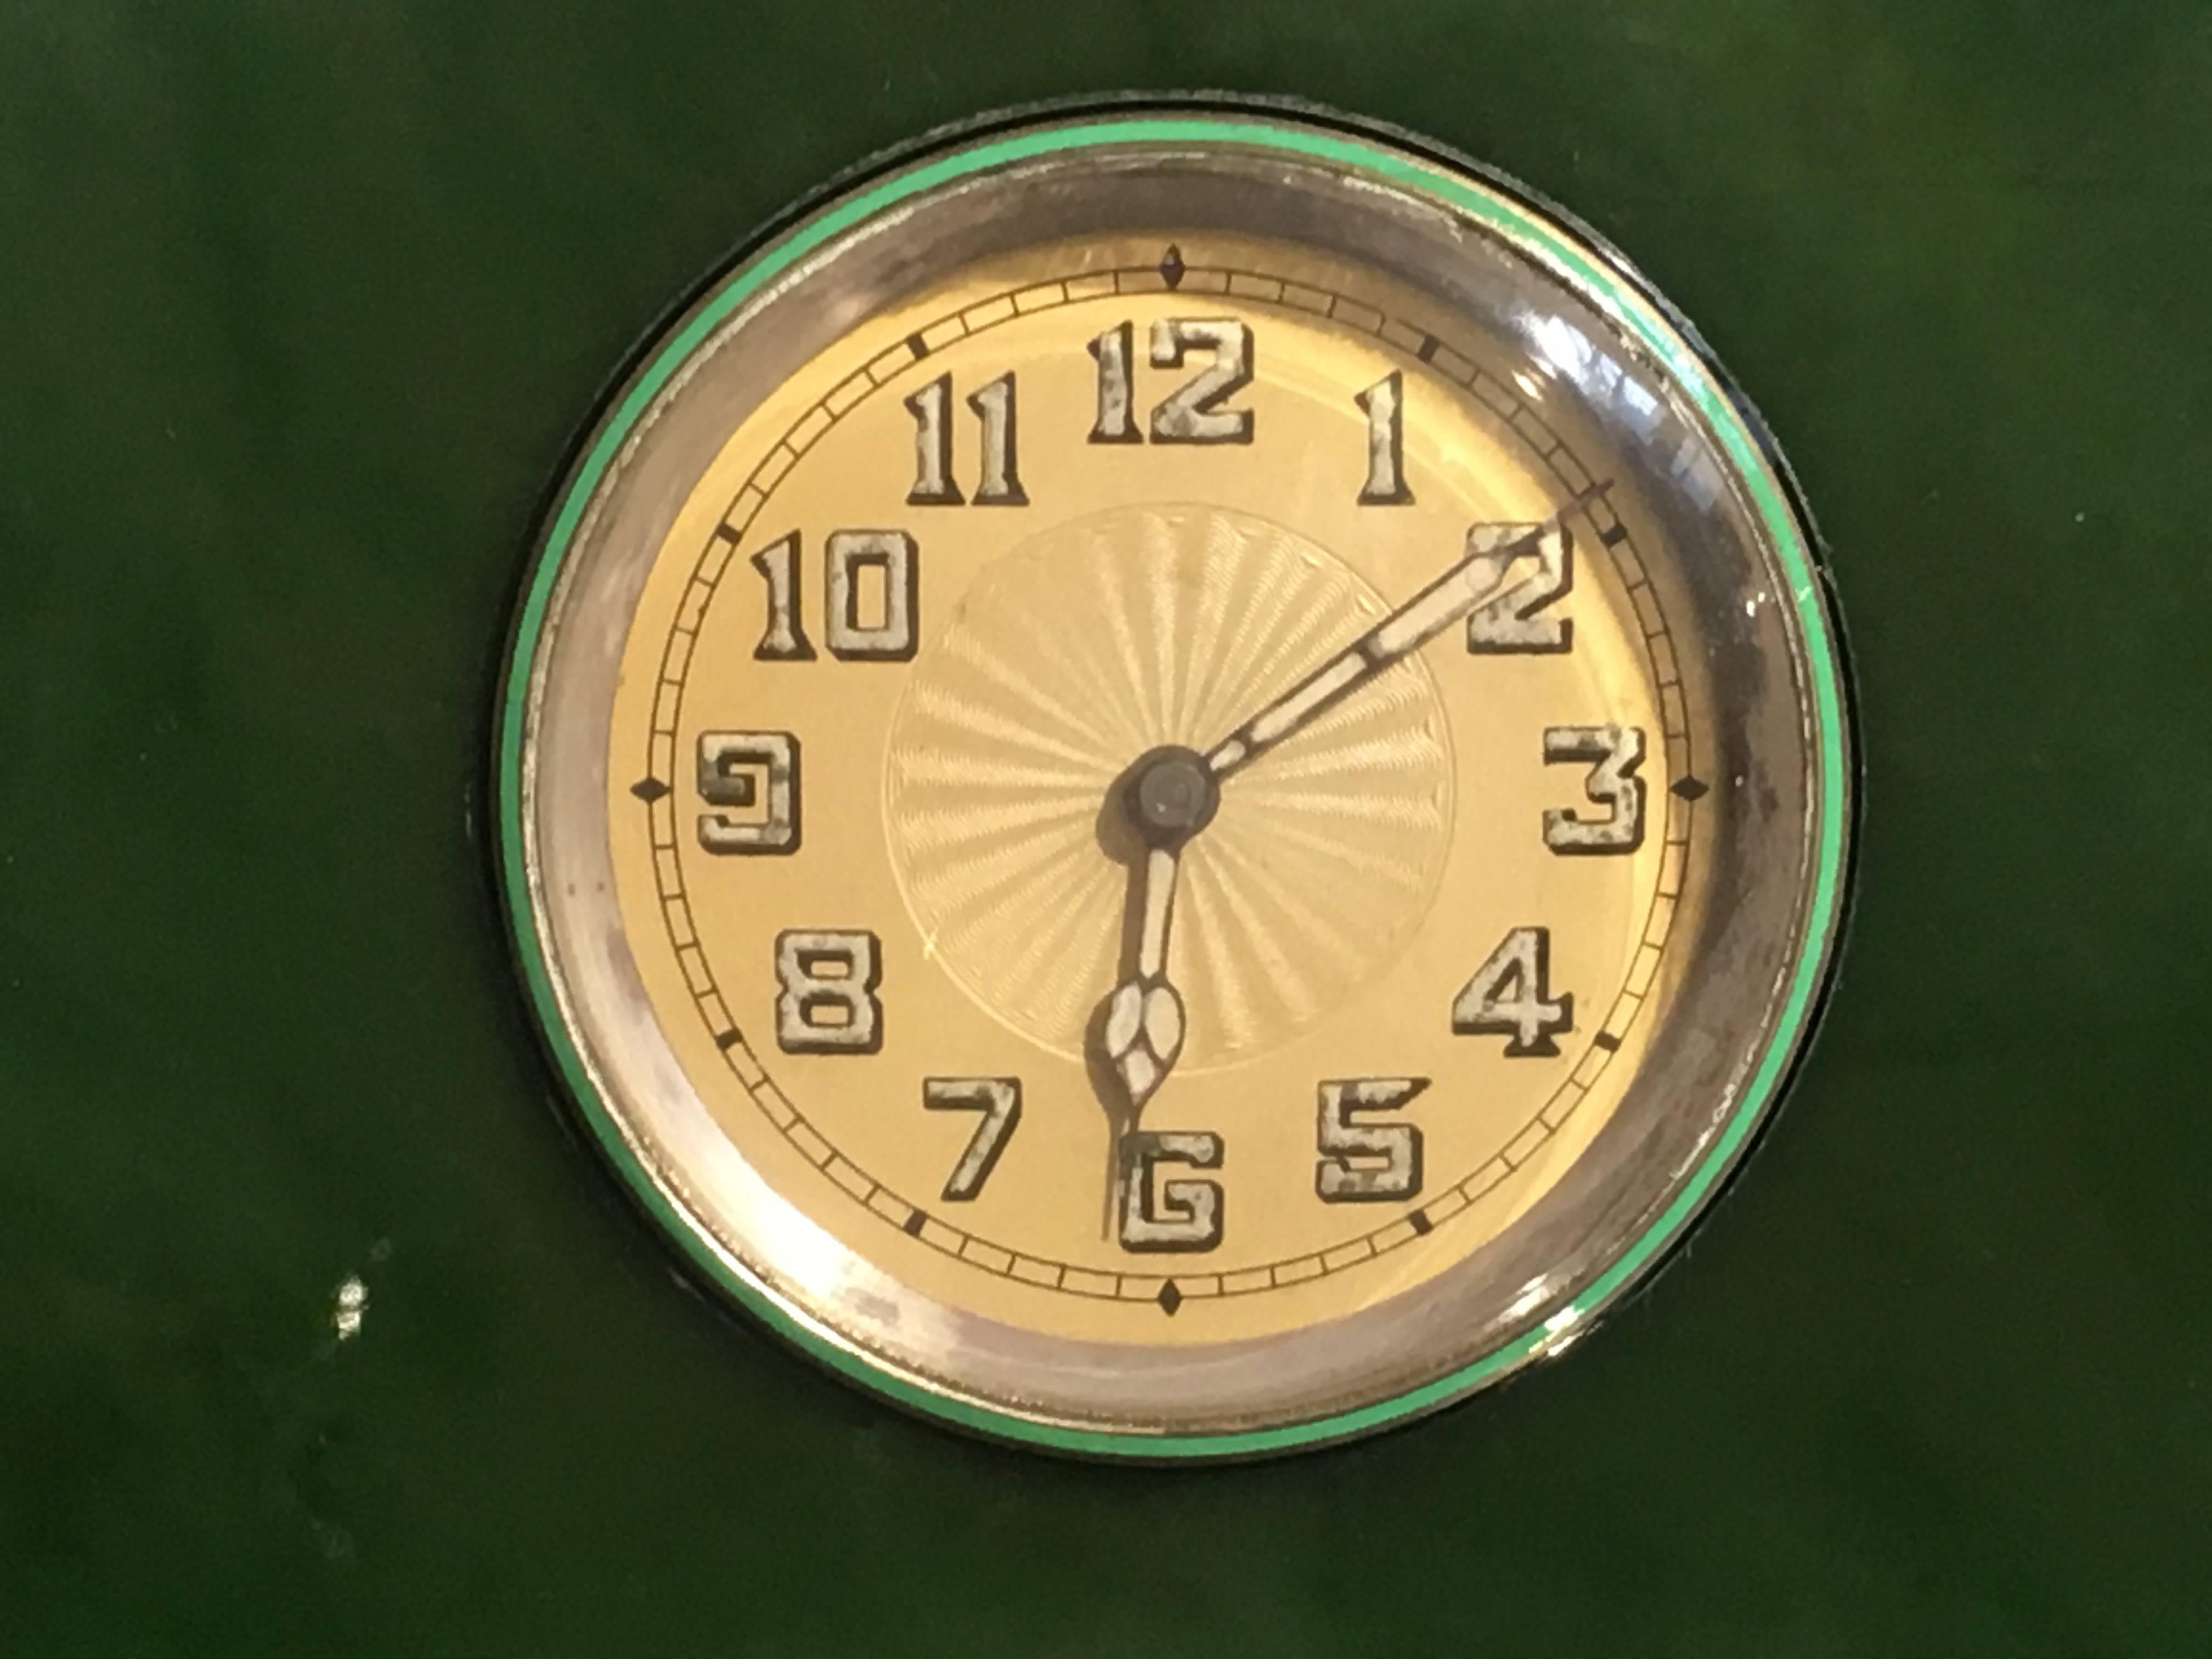 Eine elegante Tischuhr in Form eines Art-Deco-Giebels.
Gehäuse und Uhrwerk von Lemania, eingefasst in ein Gehäuse aus spinatgrüner Nephrit-Jade, montiert in Sterlingsilber mit mintgrüner und schwarzer Emaille.